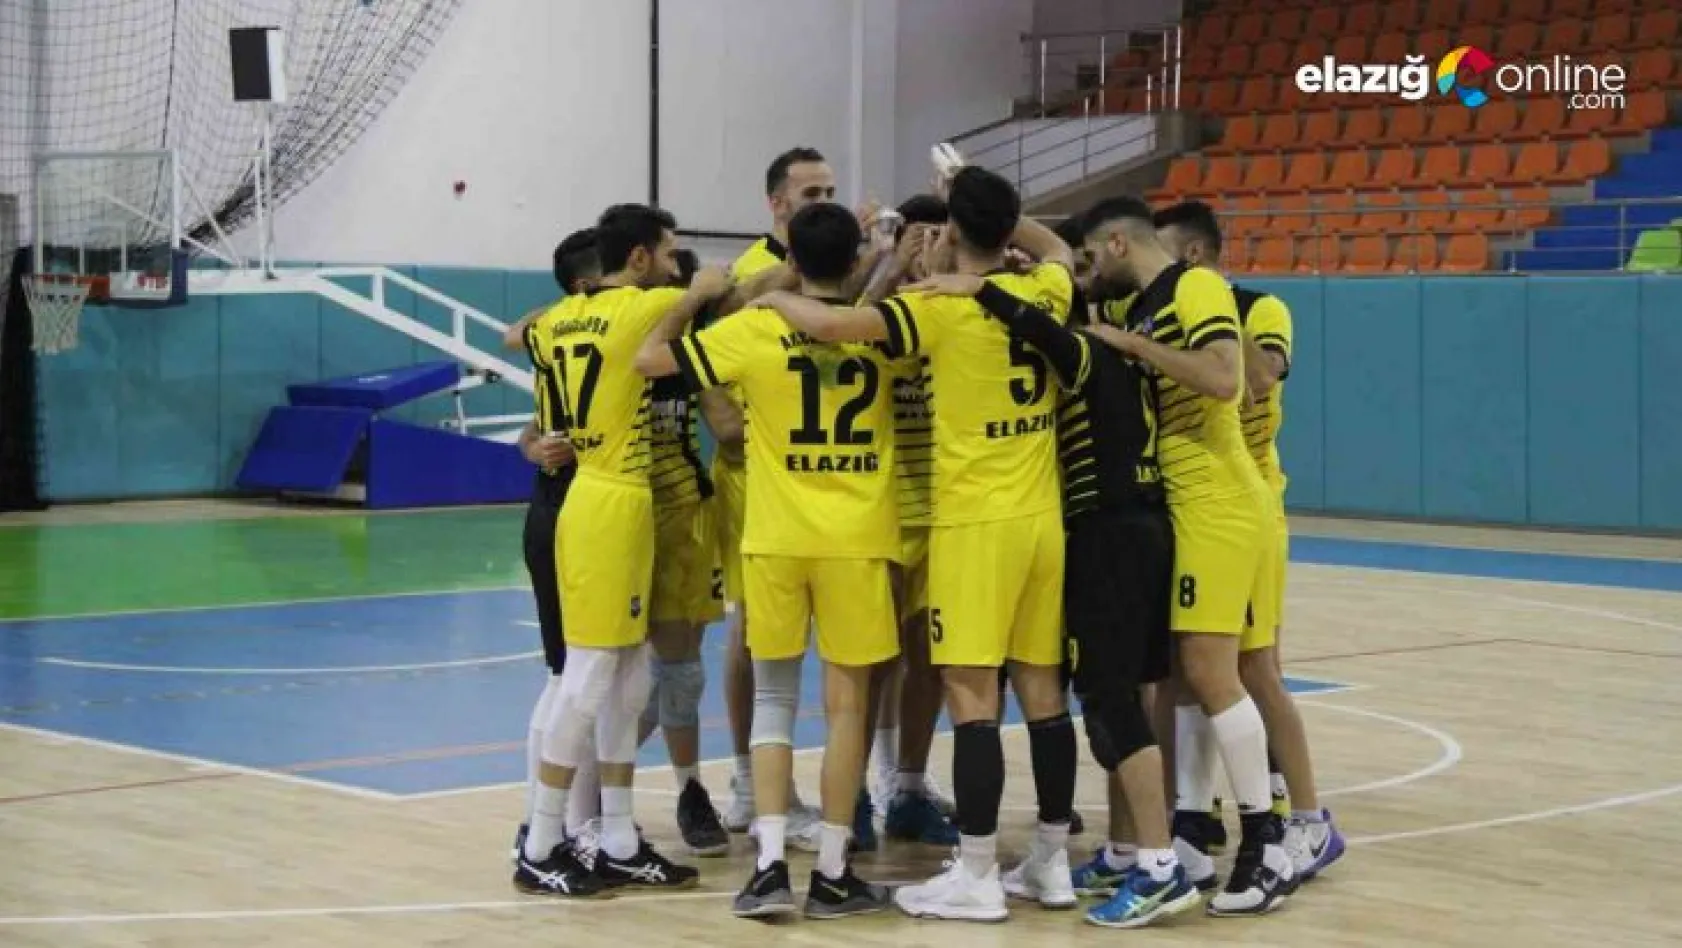 Elazığ Aksaray Gençlik, Yeni Solhanspor'u 3-0 mağlup etti